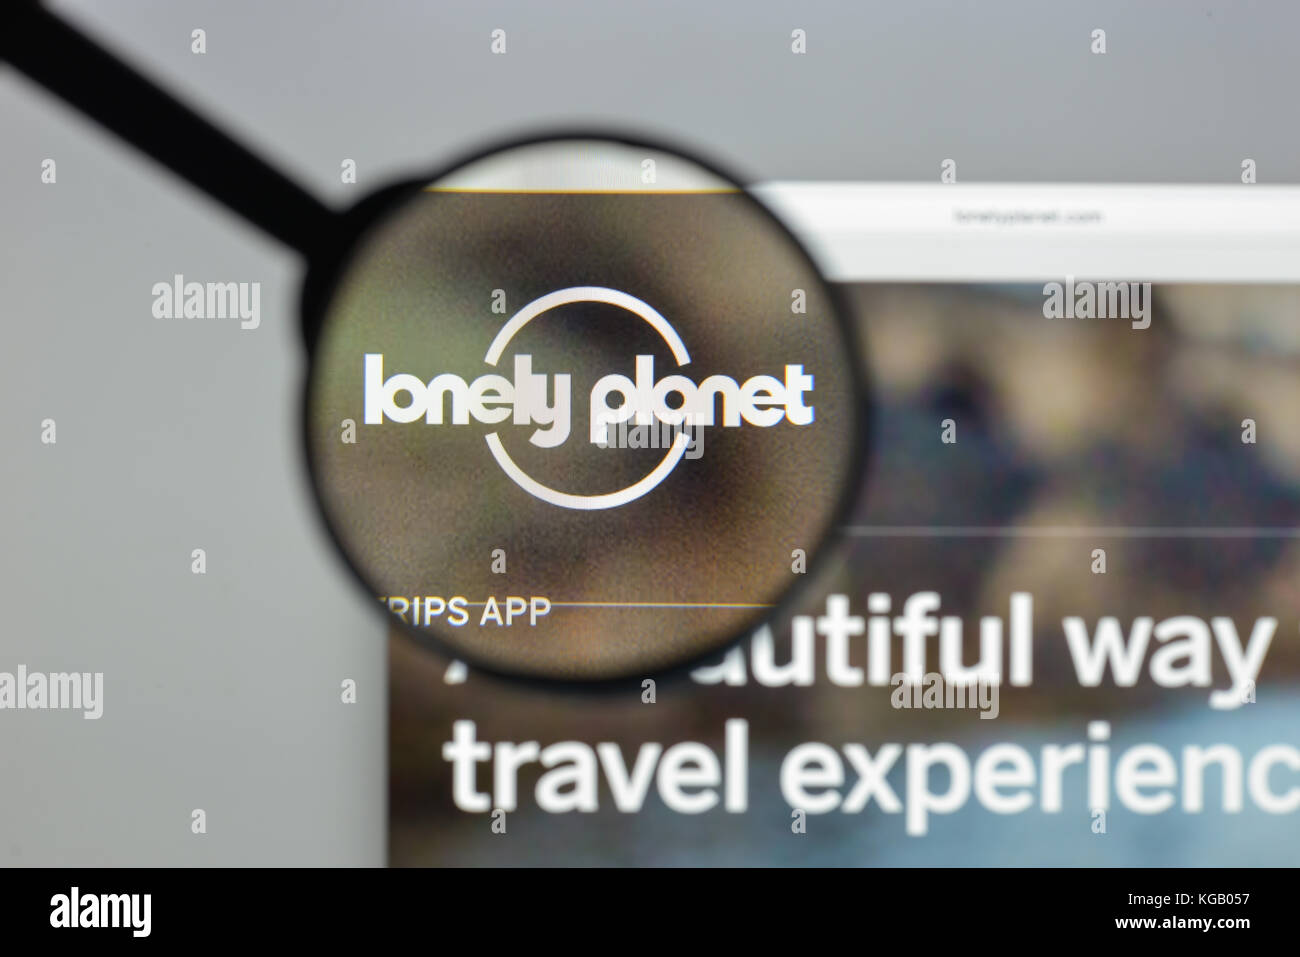 Mailand, Italien - 10 August 2017: Loney Planet homepage. Es ist die größte Reiseführer Buch Verlag der Welt. Loney Planet Logo sichtbar. Stockfoto